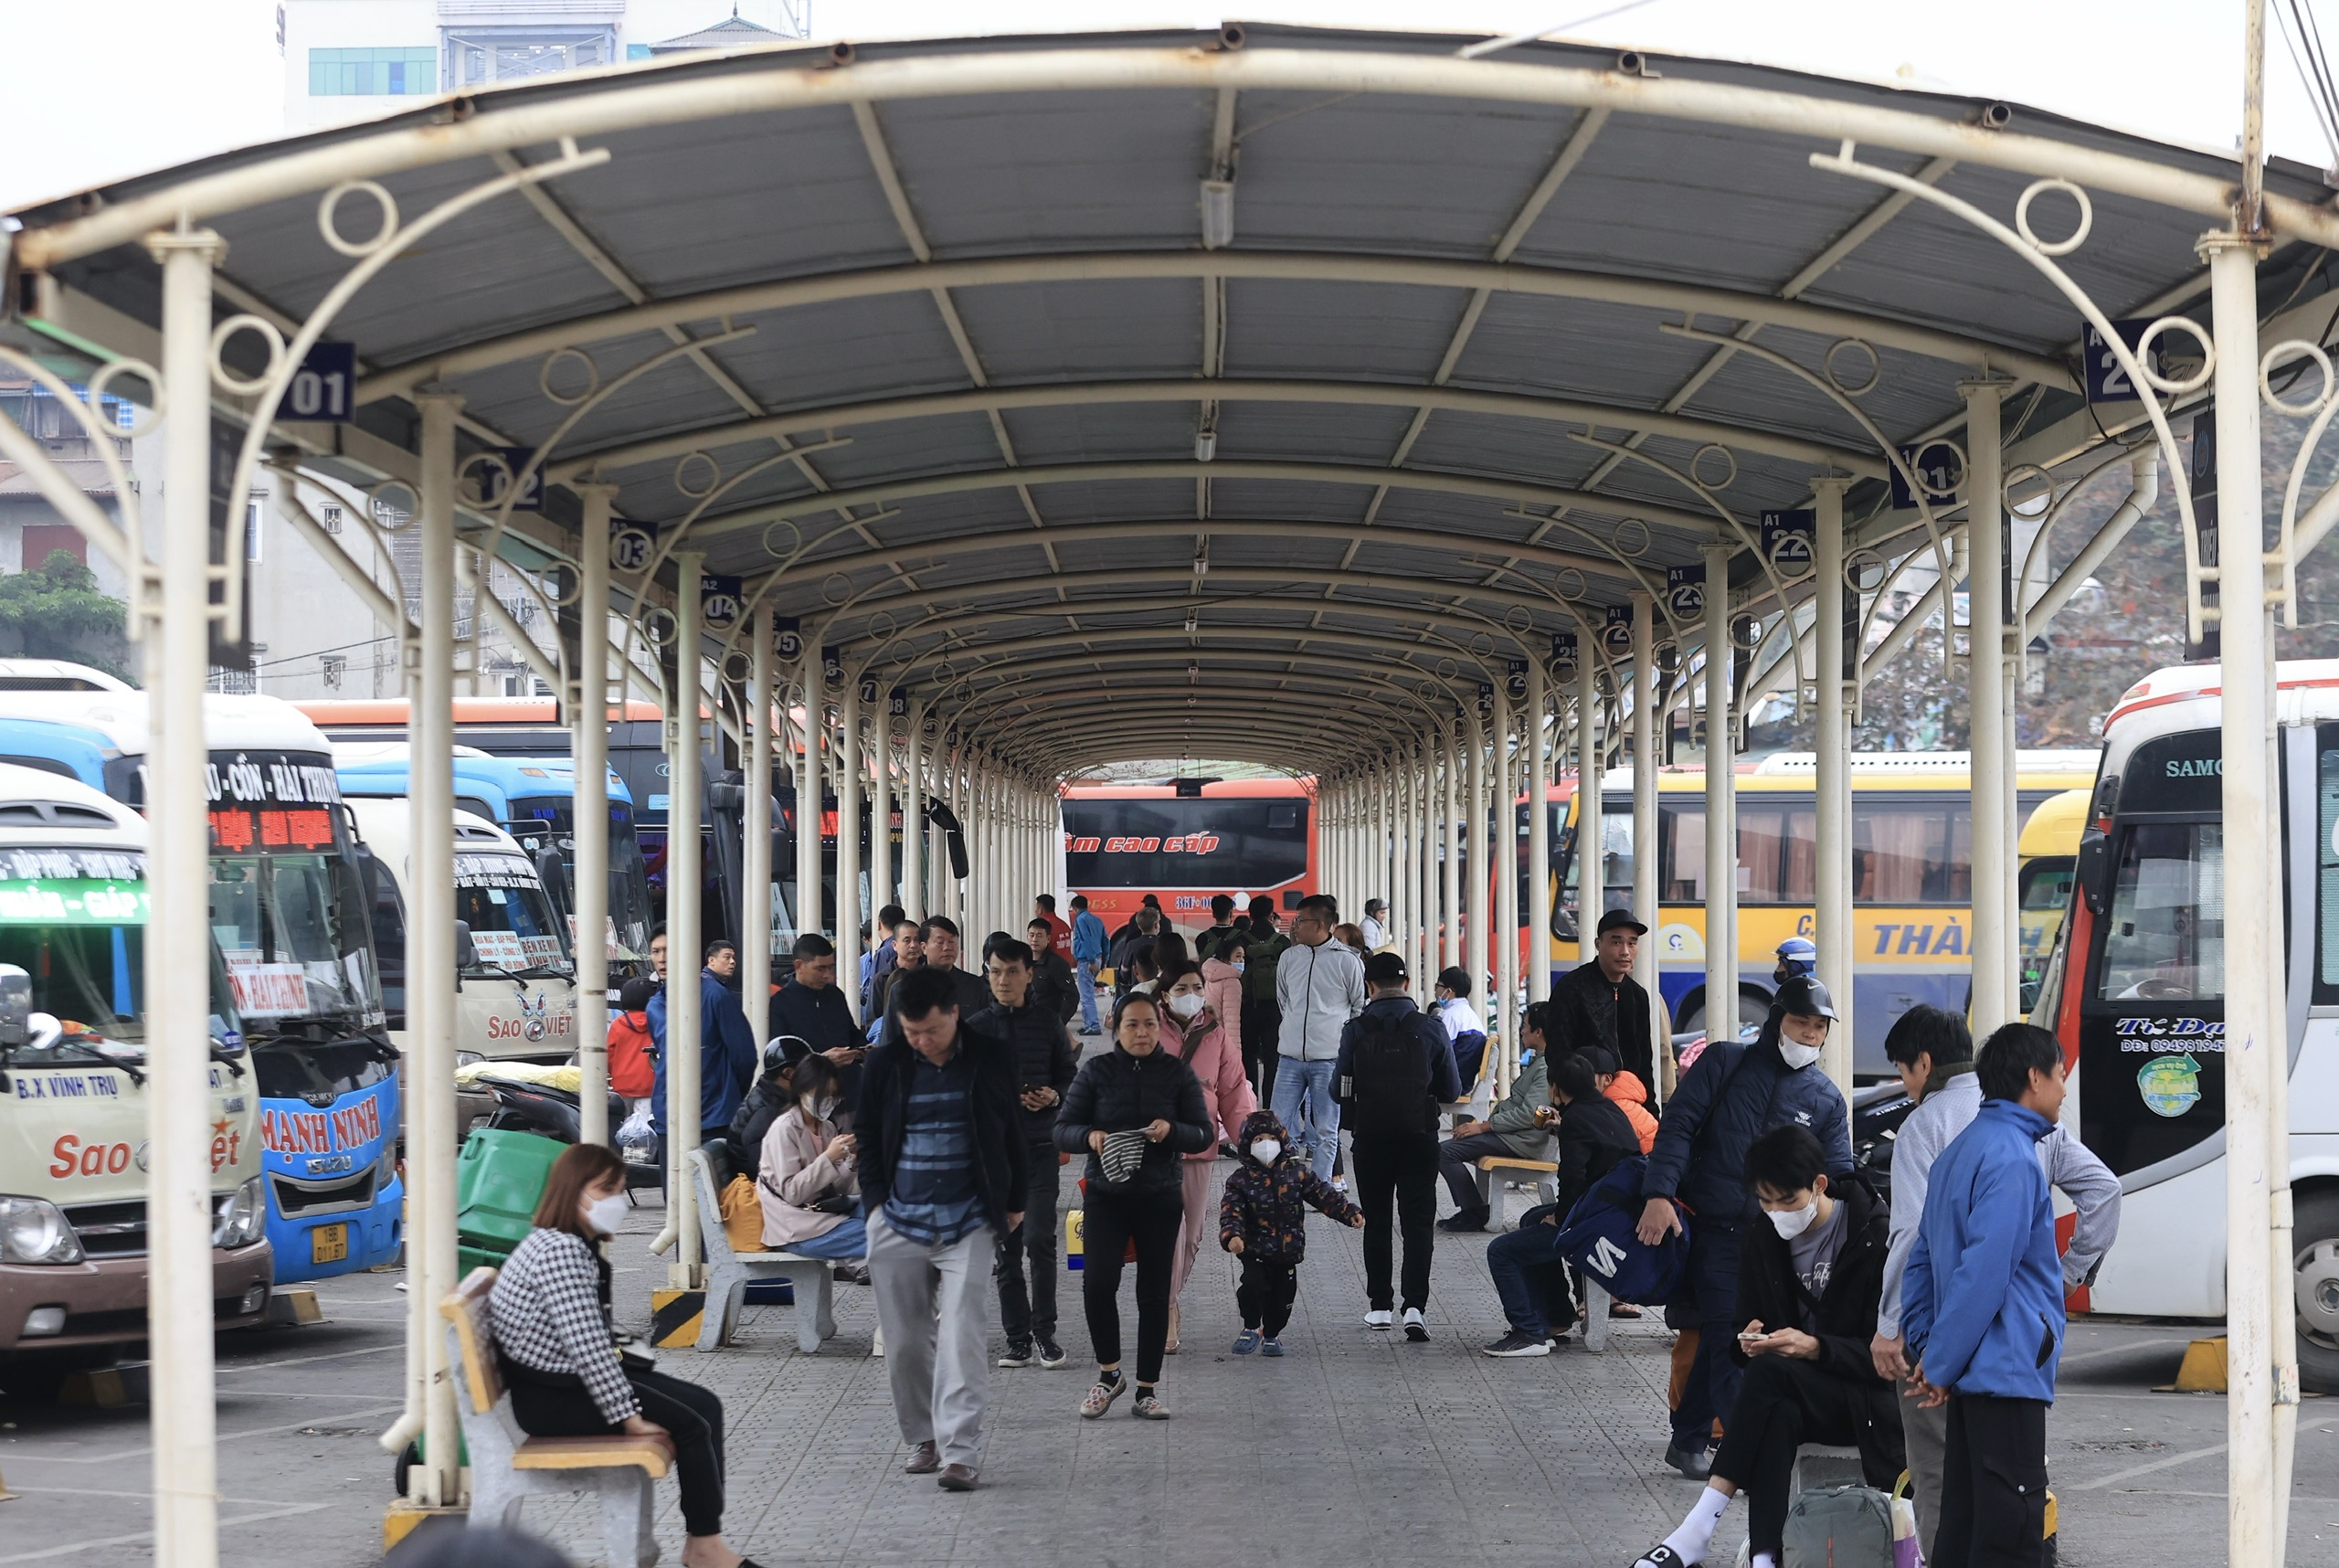 Bến xe Hà Nội nườm nượp khách về quê chiều 28 Tết- Ảnh 4.